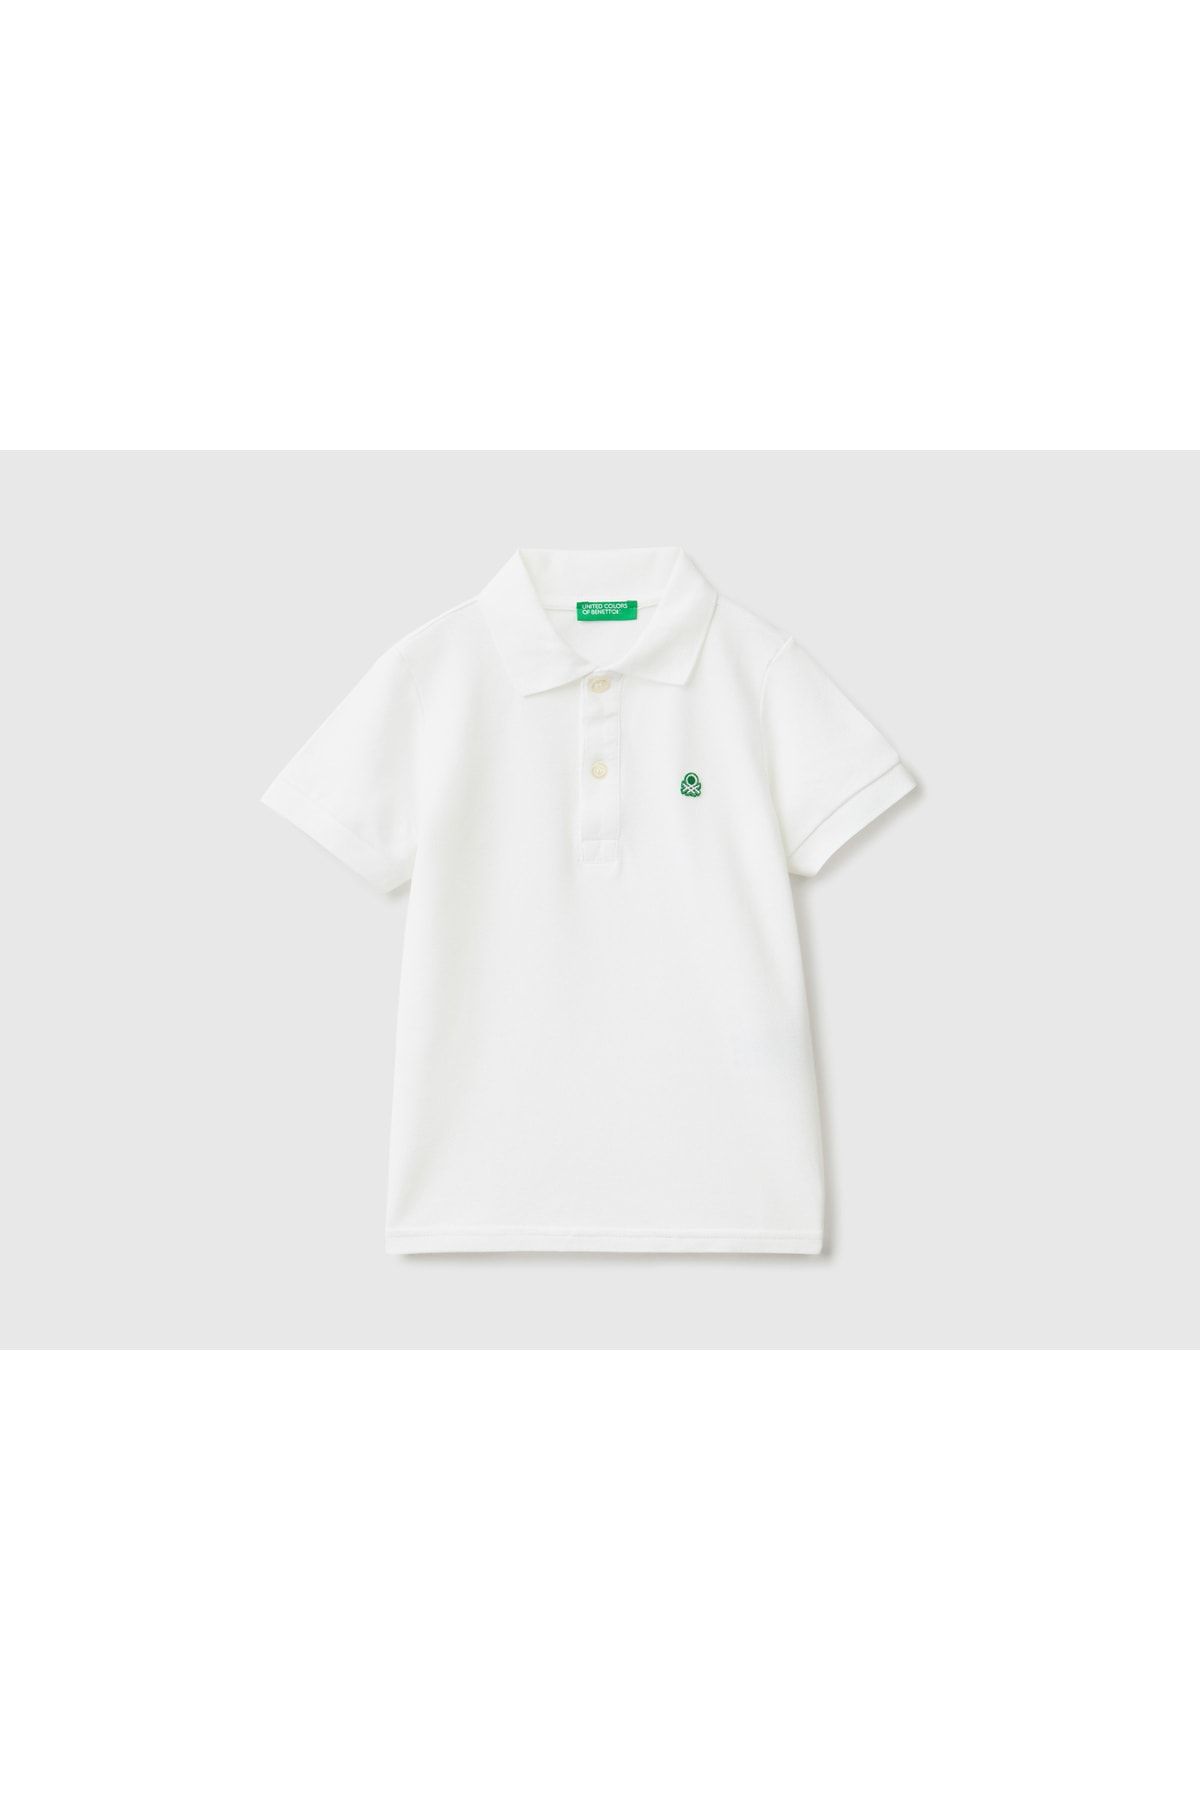 United Colors of Benetton Erkek Çocuk Beyaz Logolu Polo T-shirt Beyaz